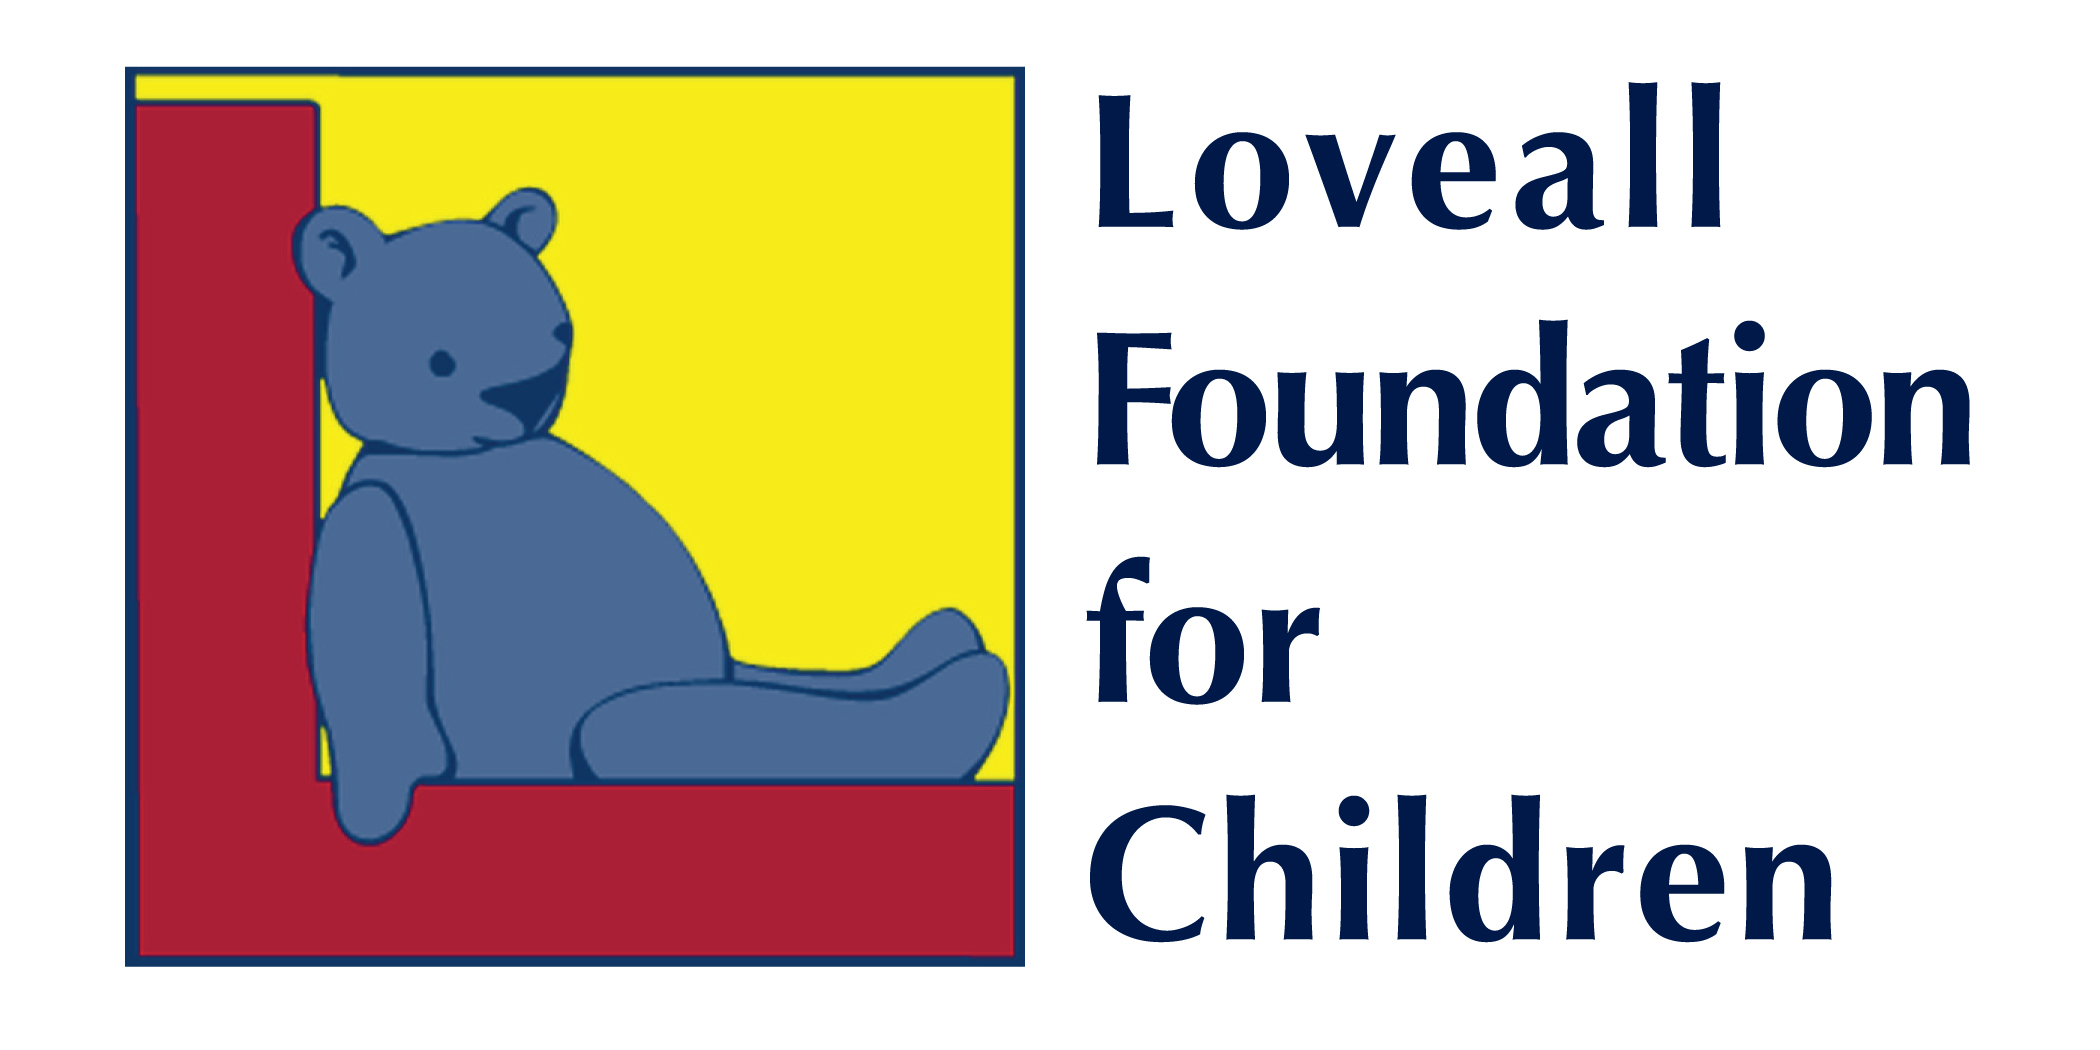 Loveall Foundation for Children